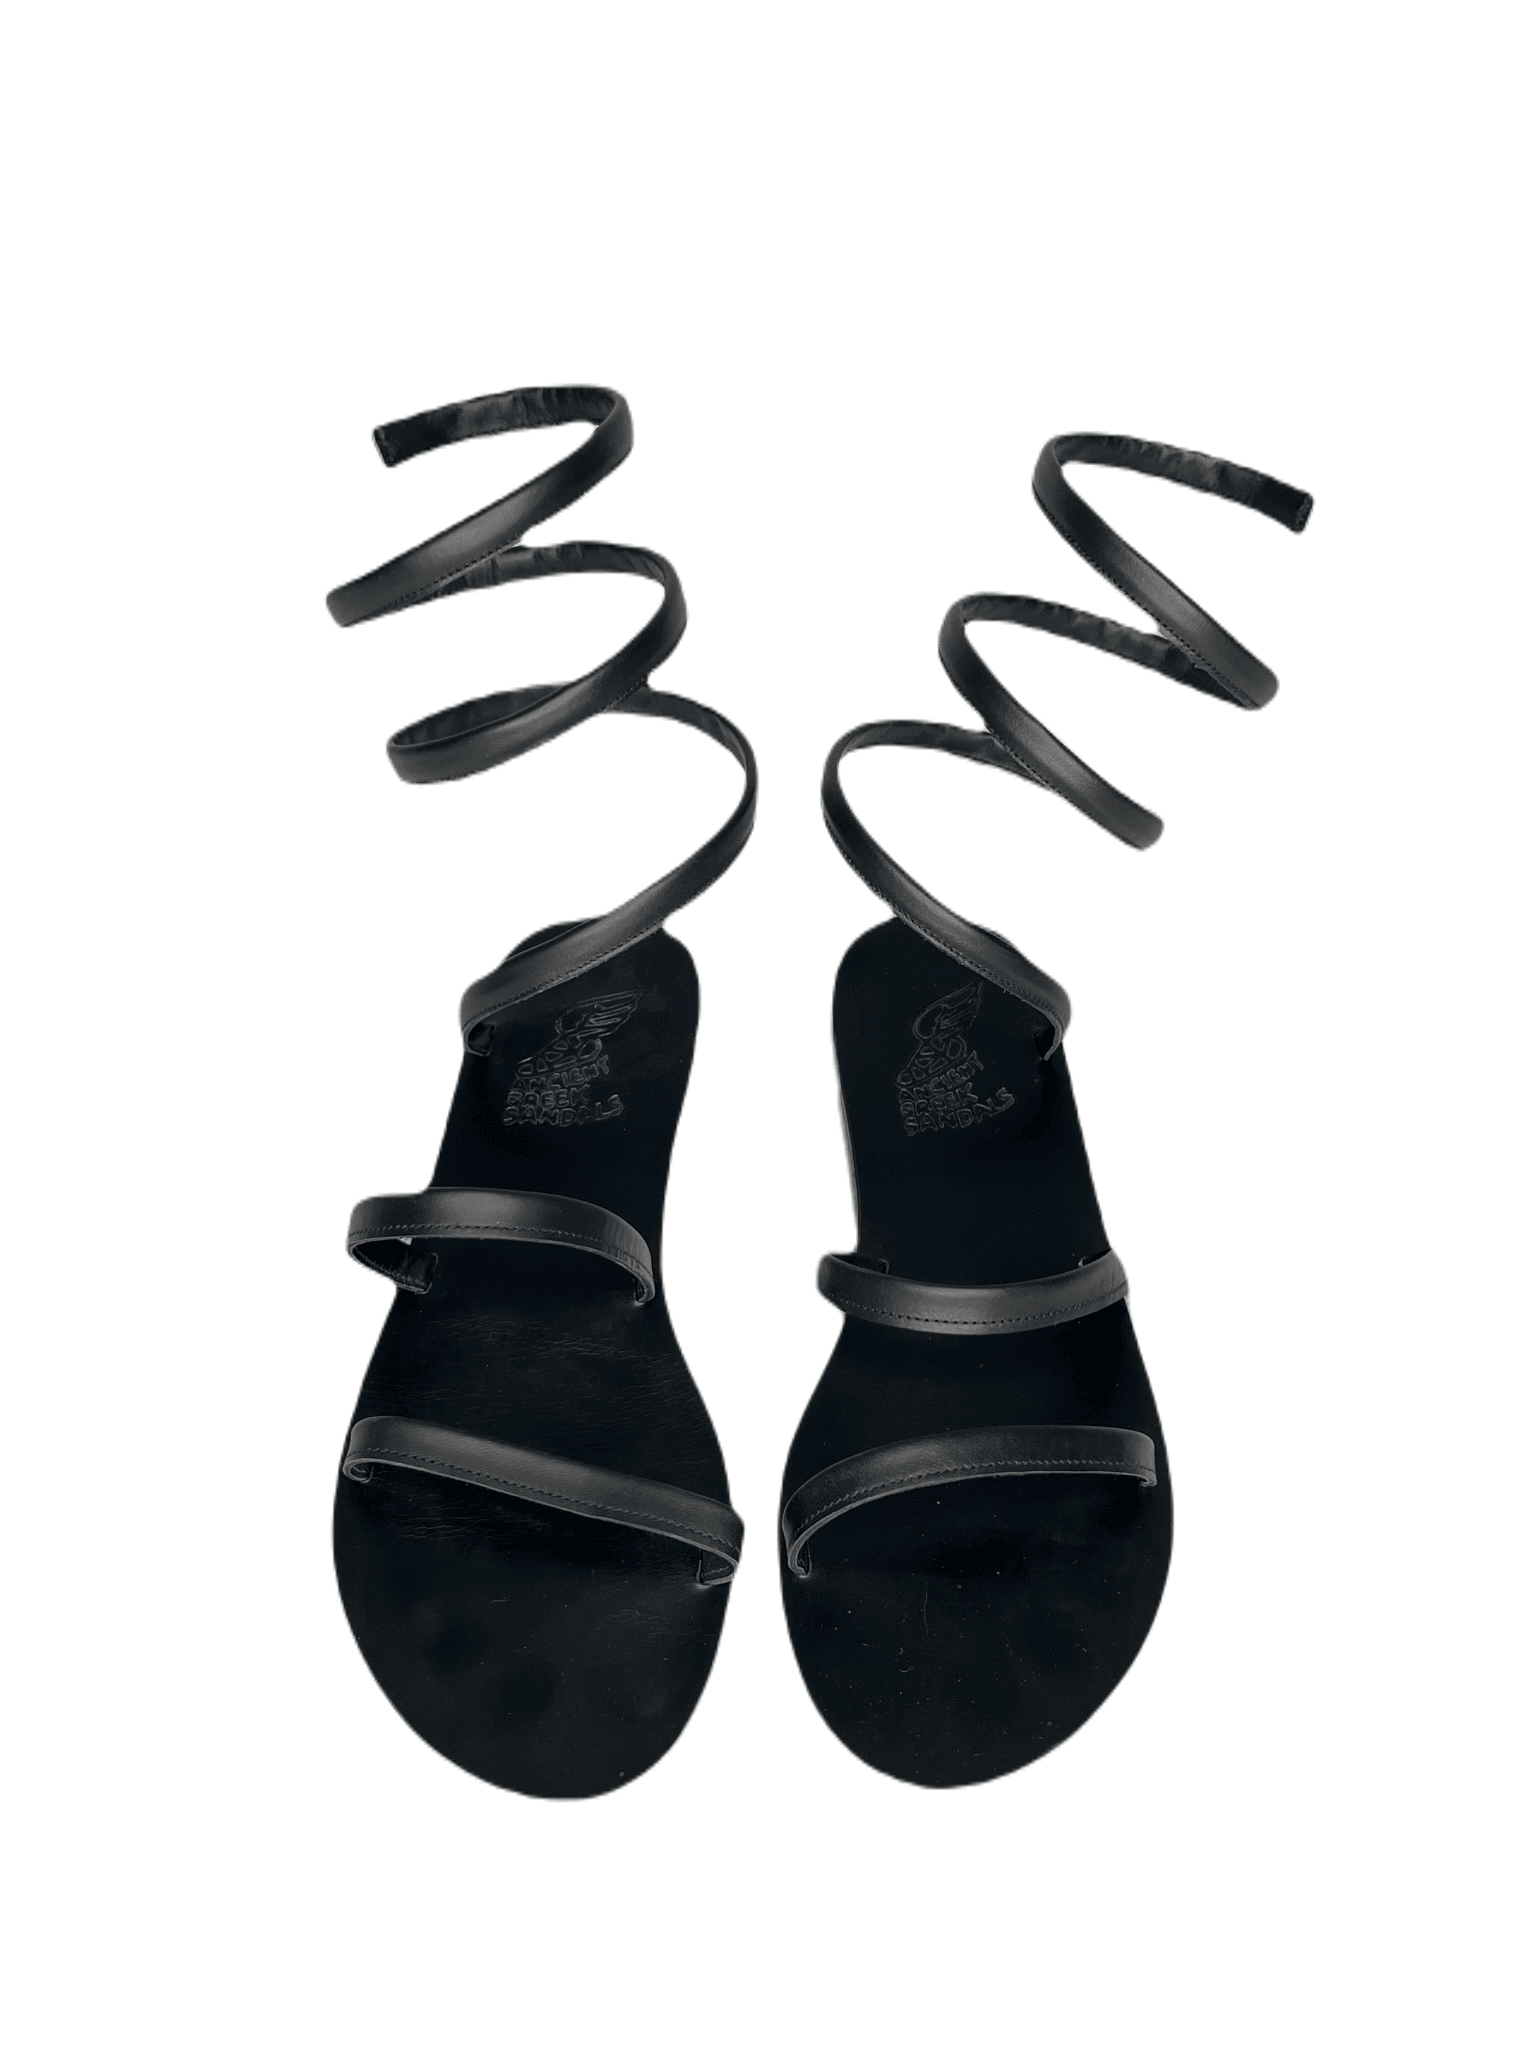 Spiral Strap Sandals